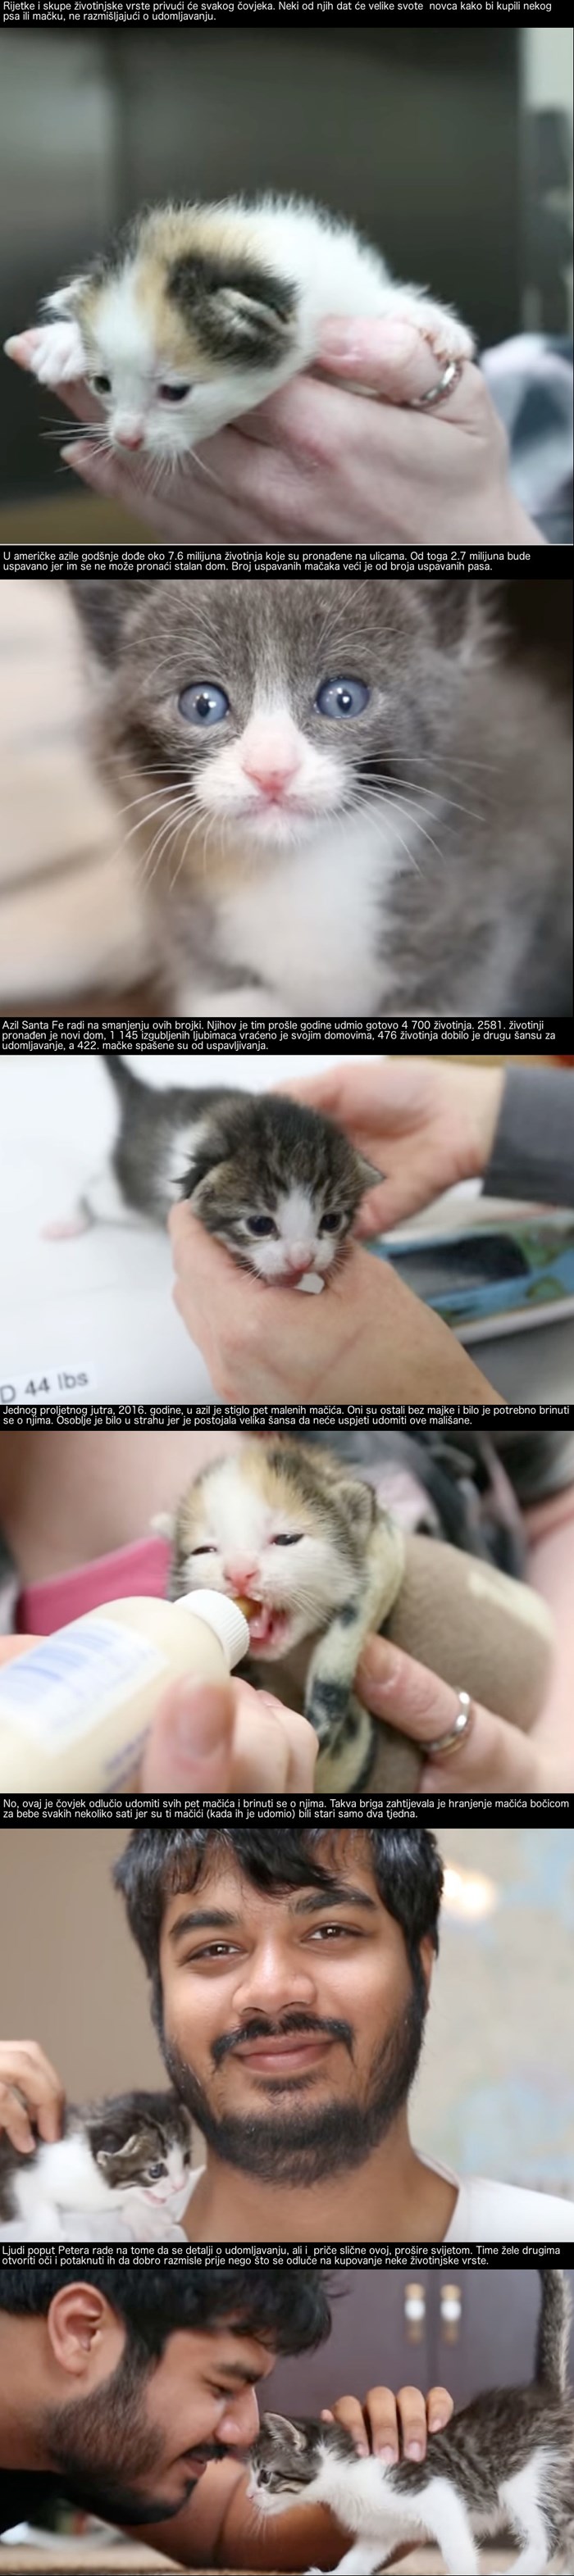 Oni su spasili 422 mačja života i svakodnevno rade na povećanju te brojke